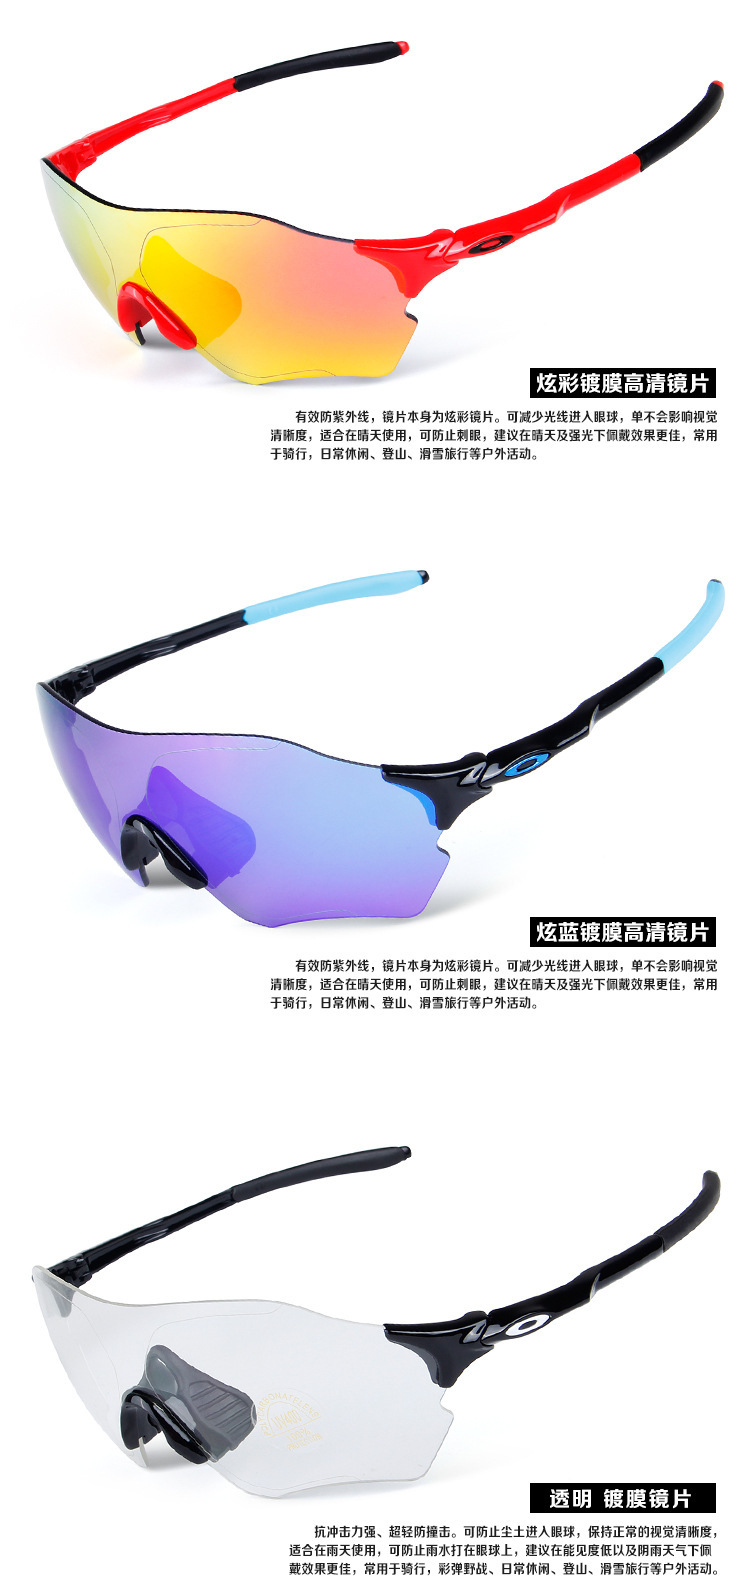 批发外贸亚马逊ebay爆款户外运动自行车骑行眼镜偏光防风镜护目镜示例图5